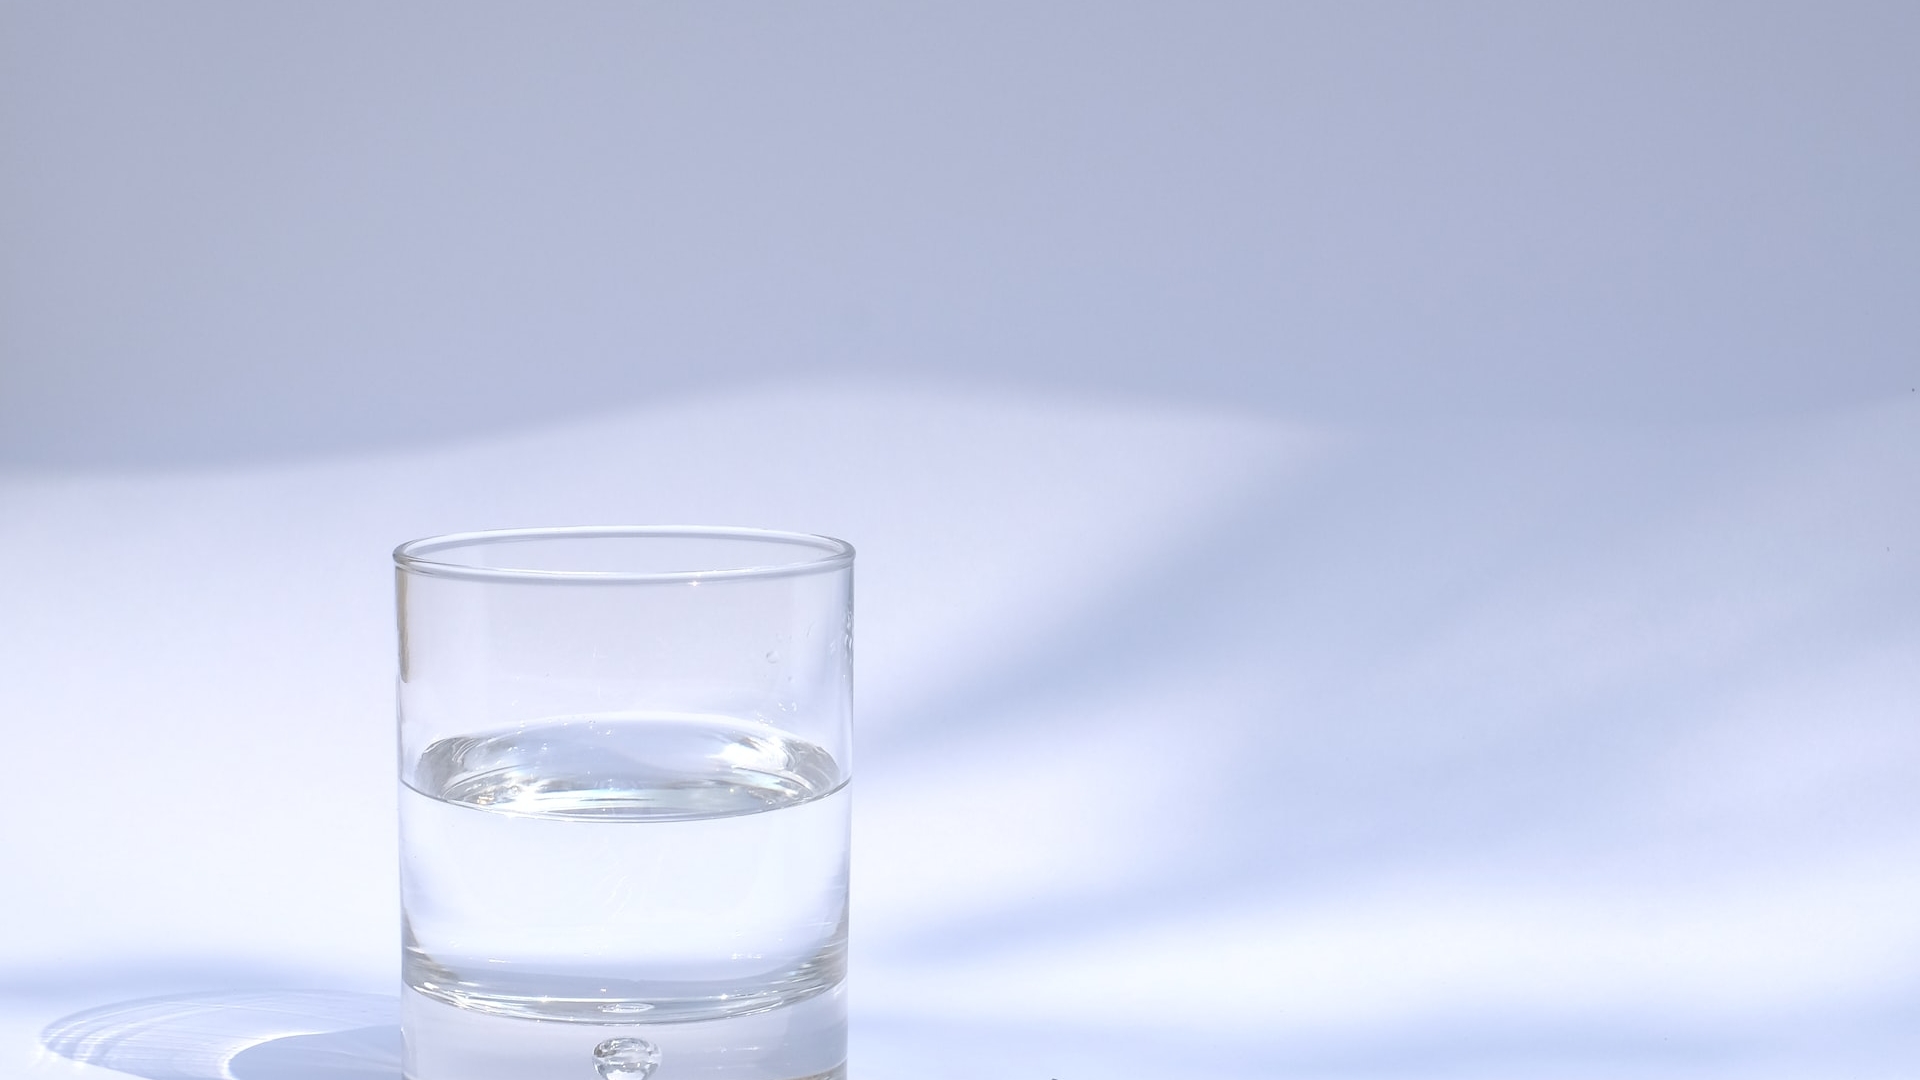 Ученые сообщают, что не обязательно использовать хлор для очистки воды